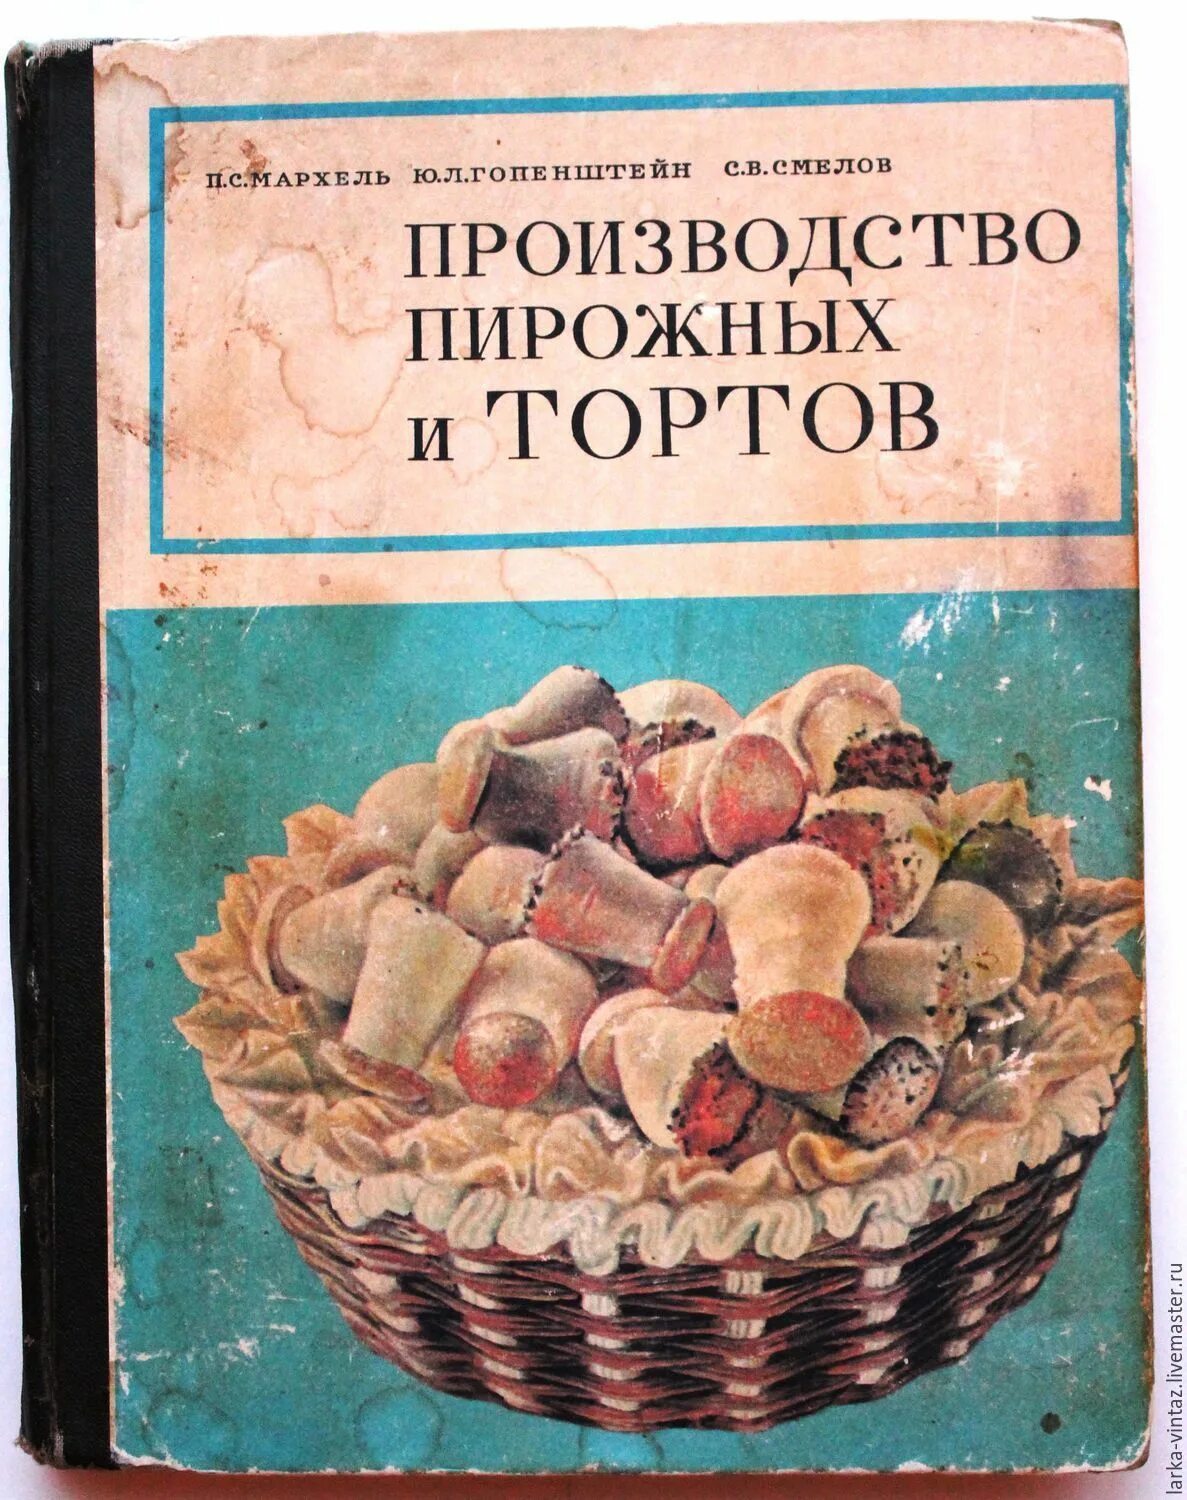 Книга рецептов по госту. Советские Кулинарные книги. Старые книги по кулинарии. Советские книги по кулинарии. Книга "производство пирожных и тортов", 1976 год.